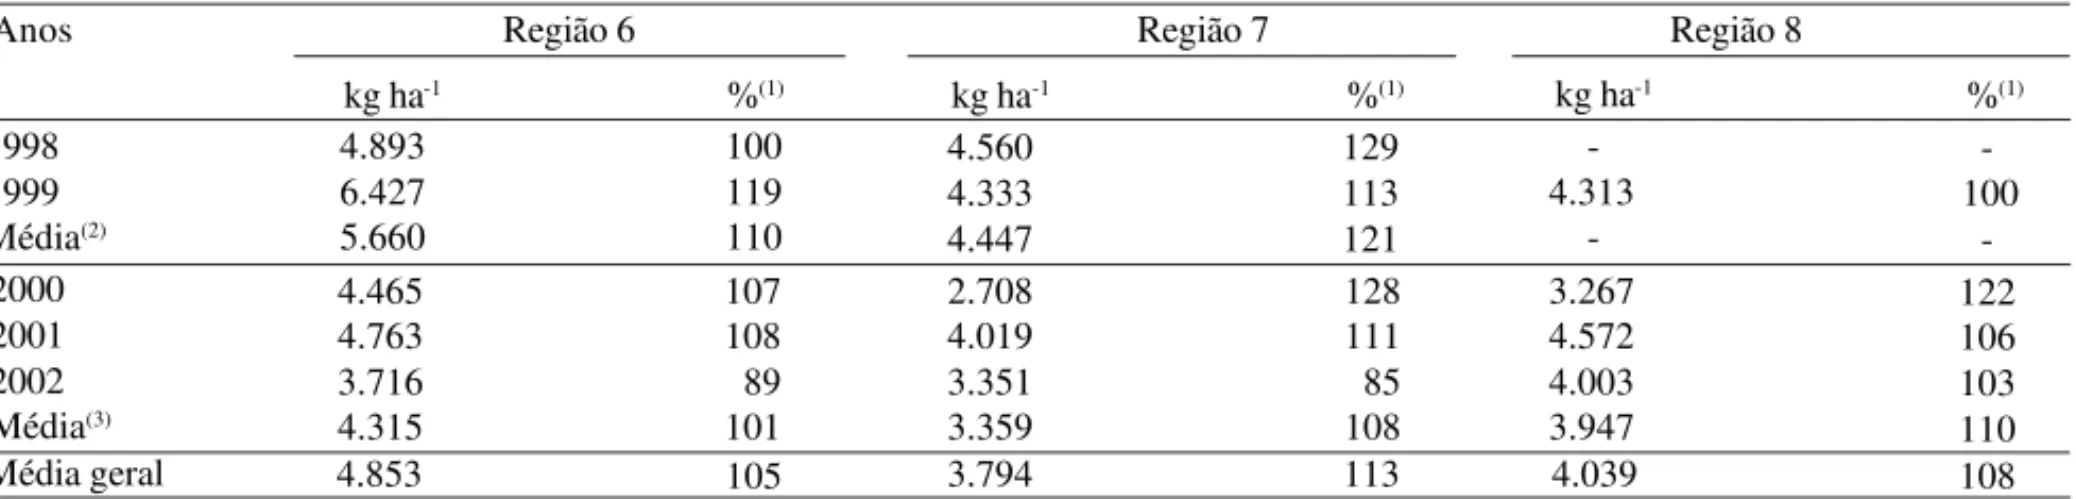 Tabela 2. Rendimento de grãos da cultivar BRS 220, nas diferentes regiões tritícolas do Estado do Paraná, nos ensaios prelimi- prelimi-nares e em rede, no período de 1998 a 2002.